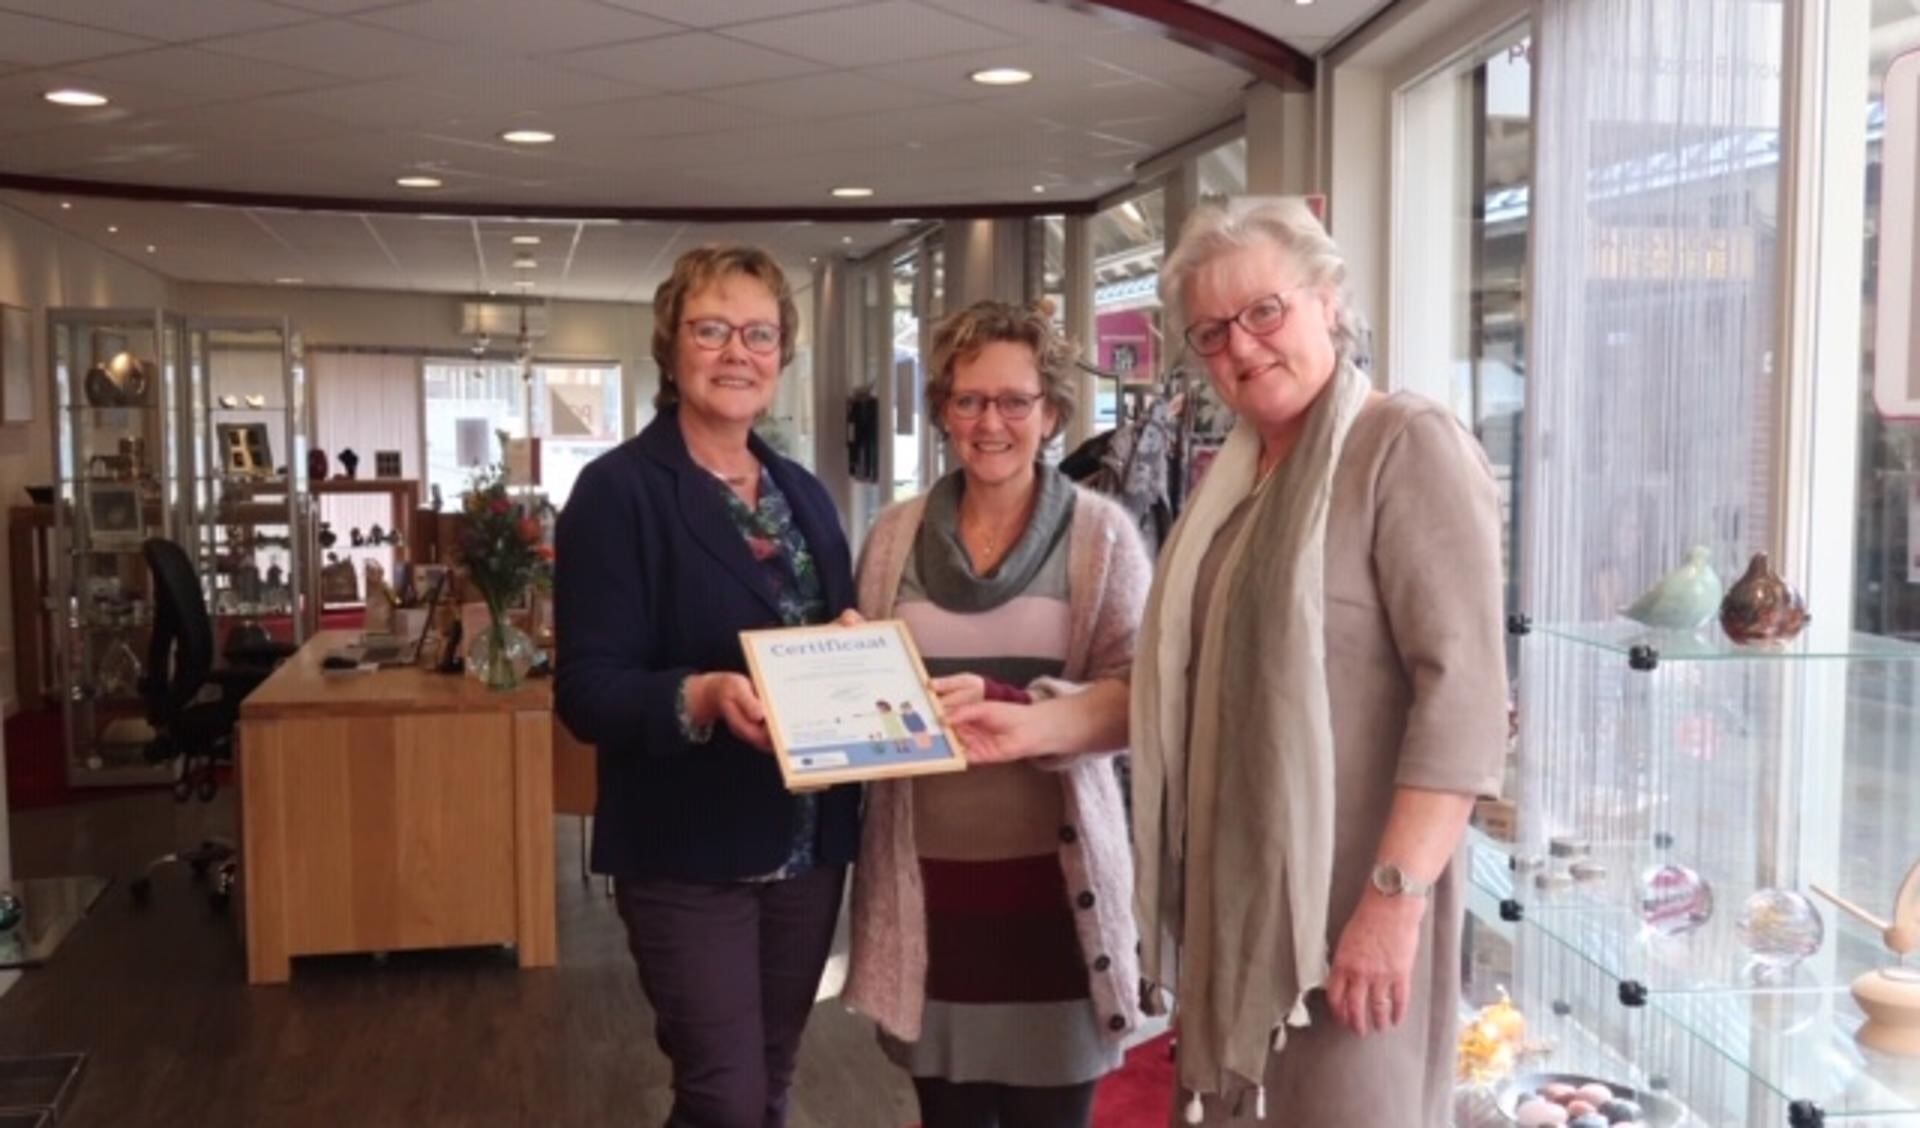 PCB Uitvaartwinkel Bilthoven is trots op het behaalde certificaat.